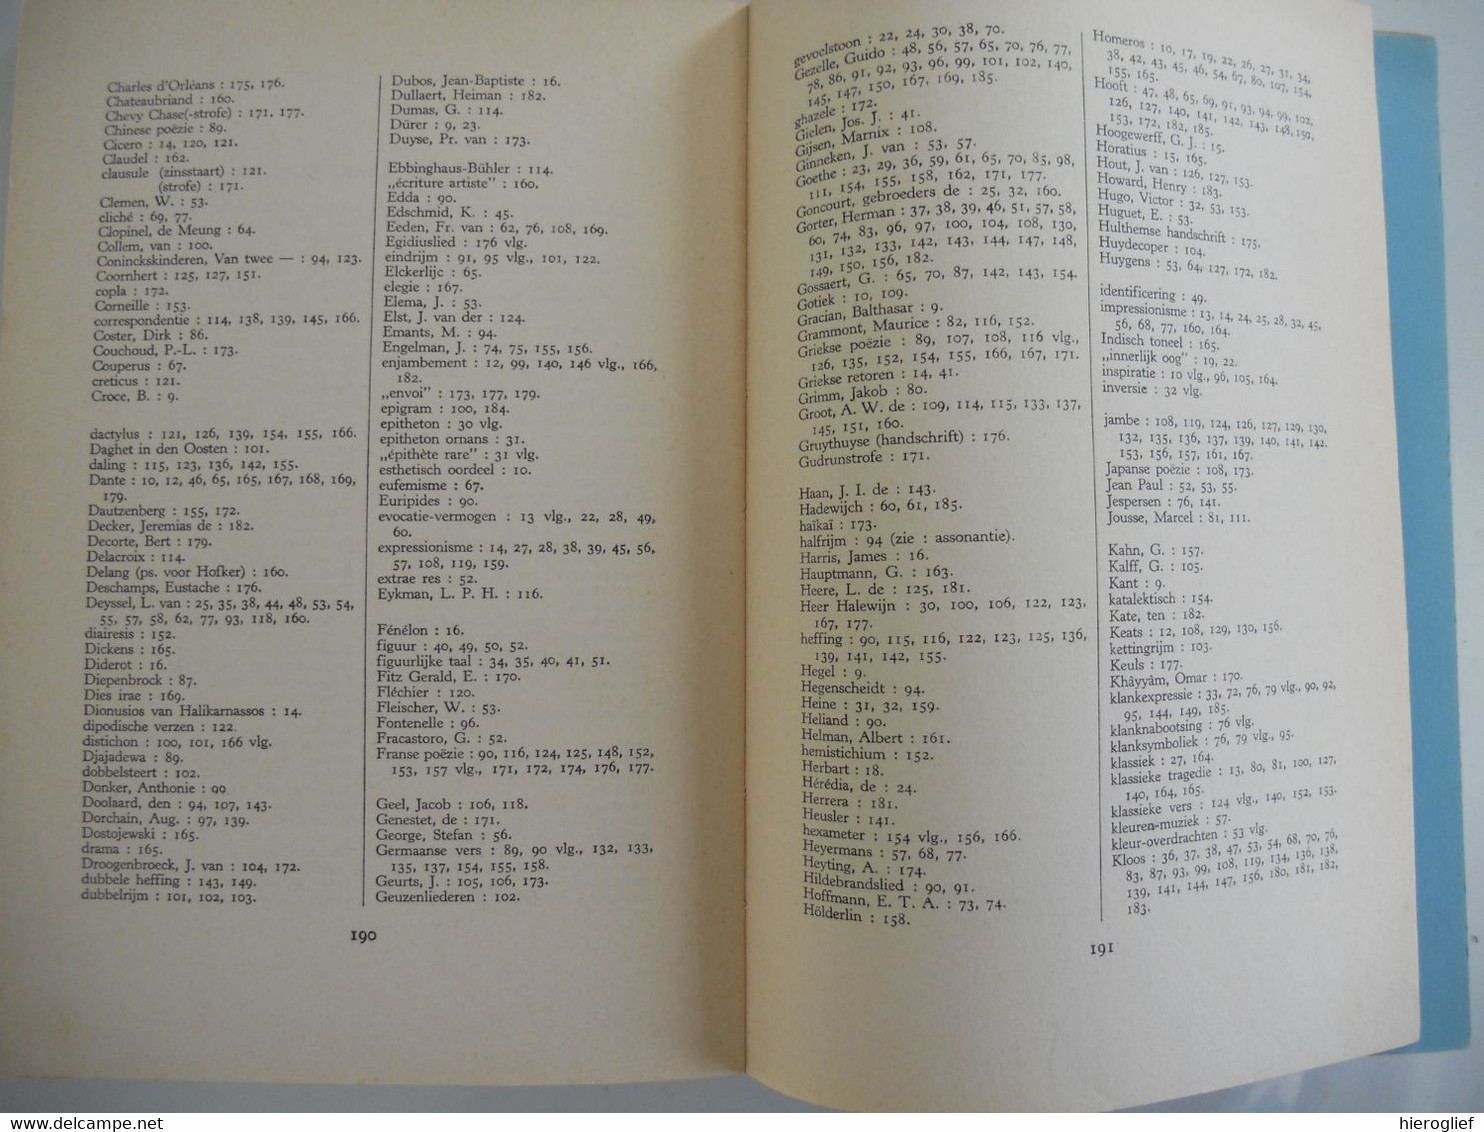 NEDERLANDSE POËTICA  door Achilles Mussche 1965  ° & + Gent poëzie taal letterkunde rijm ritme metrum